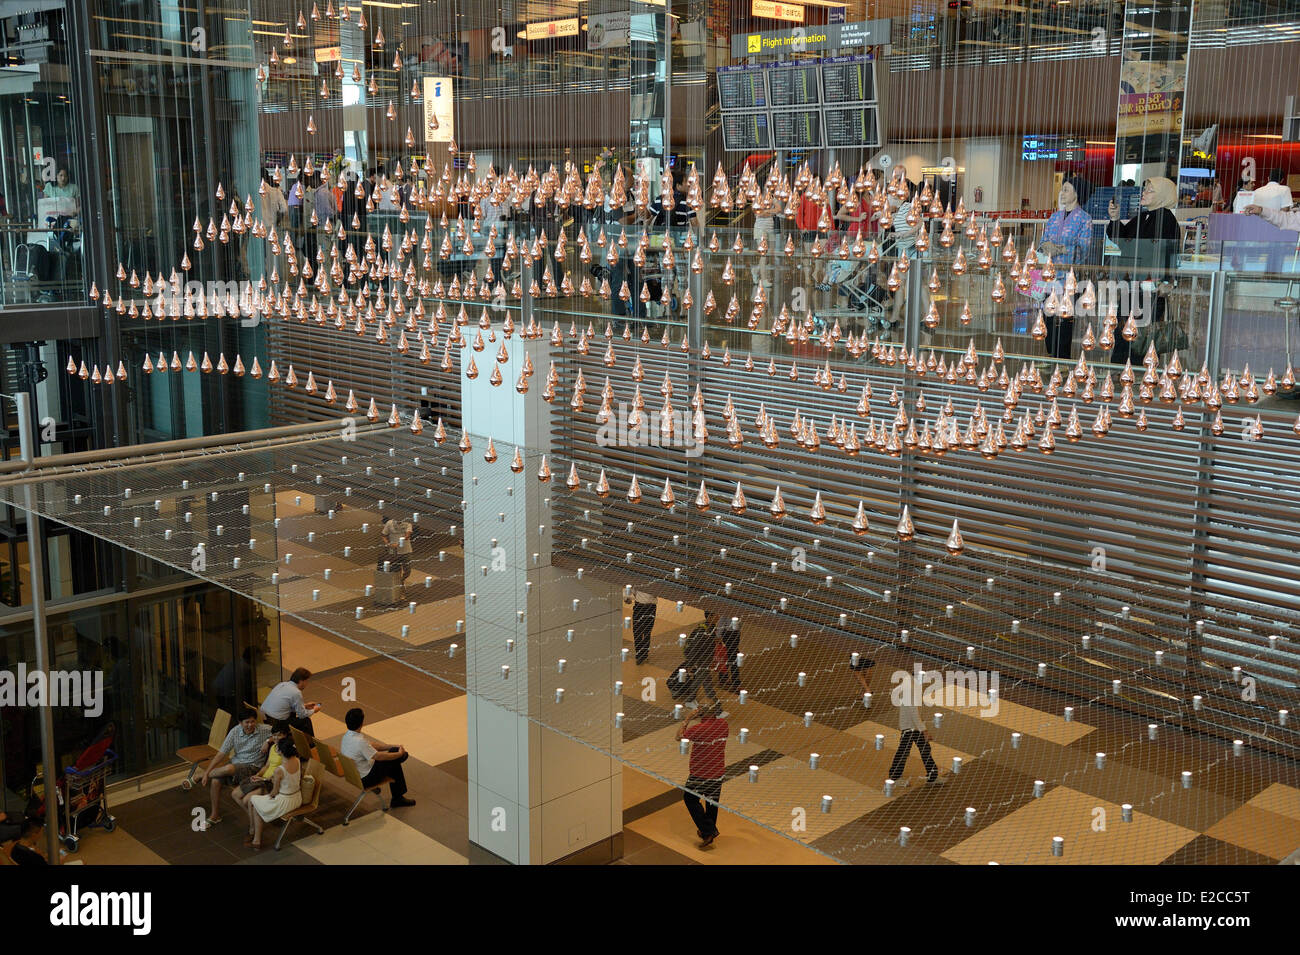 Singapour, dans l'aérogare 1 de l'aéroport de Changi est une œuvre artistique, cinétiques, Pluie par Joachim Sauter de ART  + COM et ayant plus de 1216 gouttes de bronze en suspension dans l'air qui se déplacent dans une chorégraphie synchronisée Banque D'Images